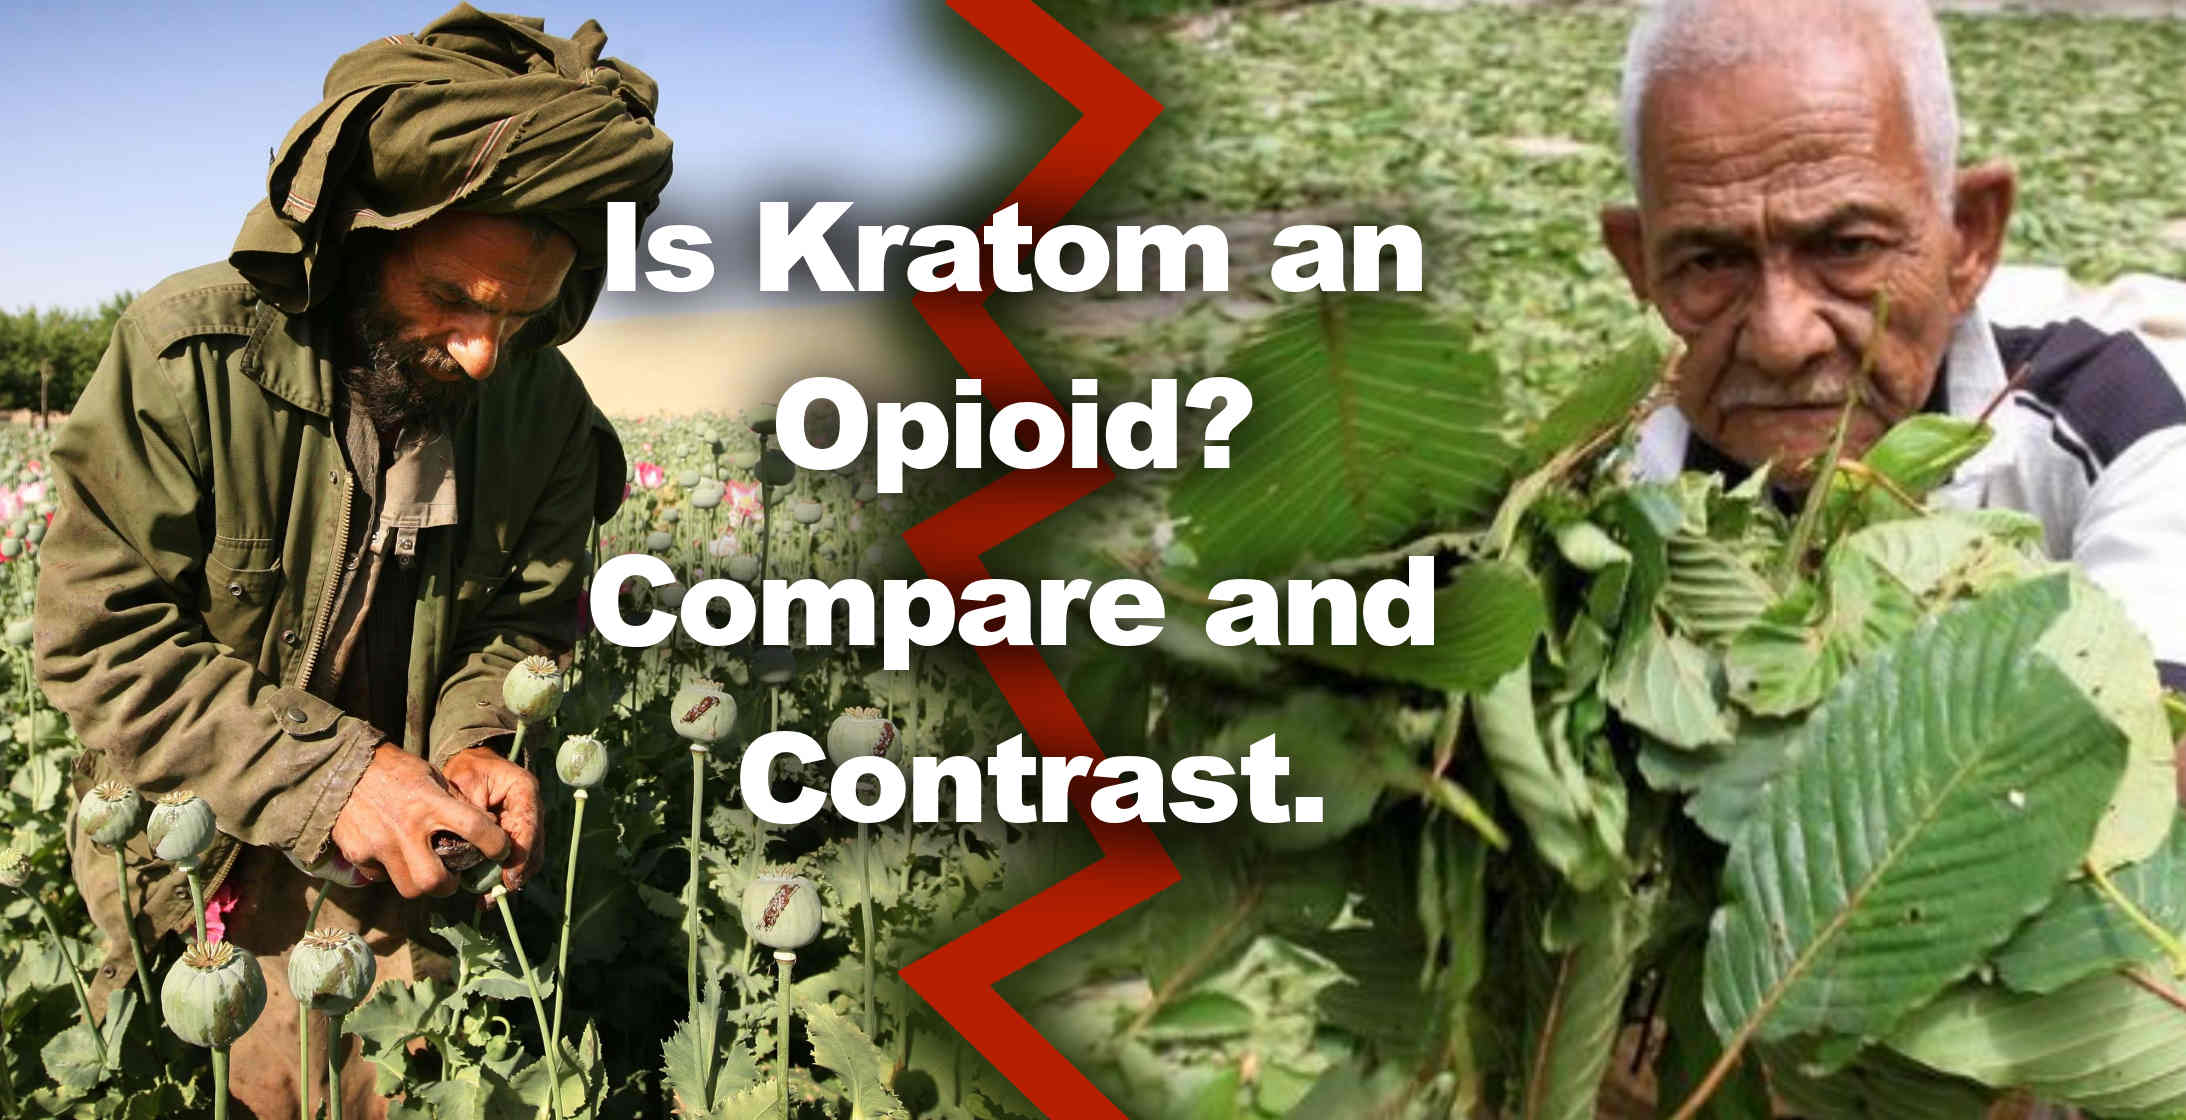 Is Kratom a opioid